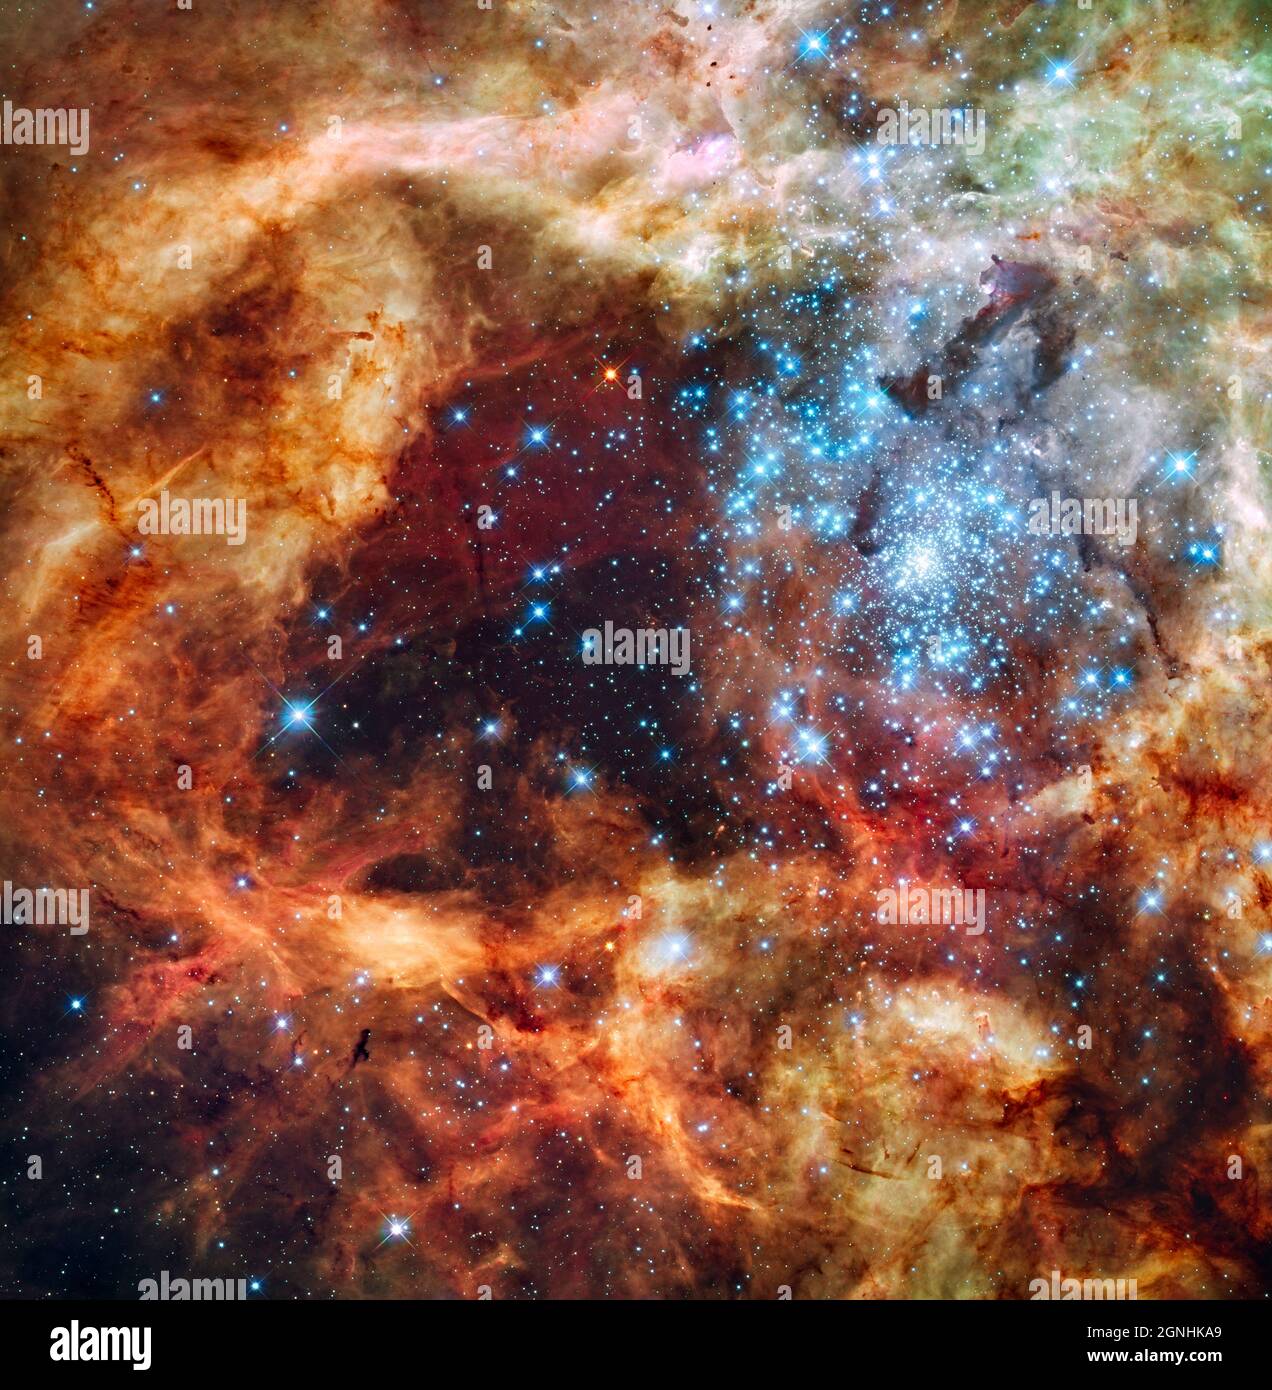 Die massive, junge Sterngruppe, genannt R136, ist erst wenige Millionen Jahre alt und findet sich im Doradus-Nebel von 30, einer turbulenten Sternentstehungsregion in der Großen Magellanischen Wolke (LMC).viele der diamantartigen eisblauen Sterne gehören zu den massereichsten bekannten Sternen. Einige von ihnen sind über 100 Mal massereicher als unsere Sonne. Das Bild ist etwa 100 Lichtjahre lang. Die brillanten Sterne schnitzen tiefe Hohlräume im umgebenden Material, indem sie einen Strom ultravioletten Lichts freisetzen und Sternwinde mit Hurrikankraft, die die umhüllenden Wasserstoffwolken wegreißen Stockfoto